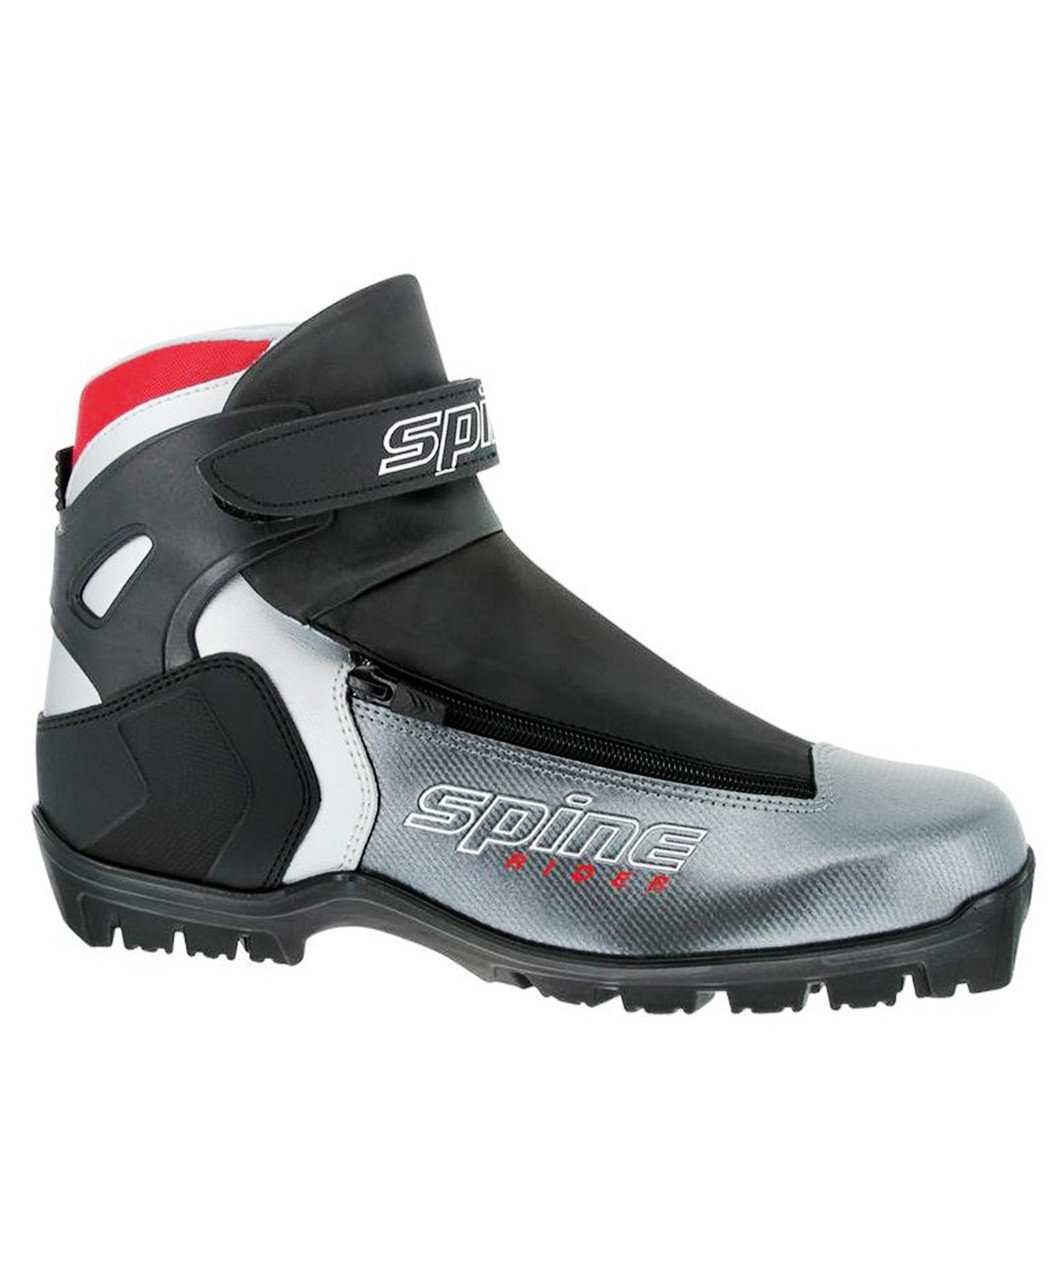 Лыжные ботинки Spine Rider 454